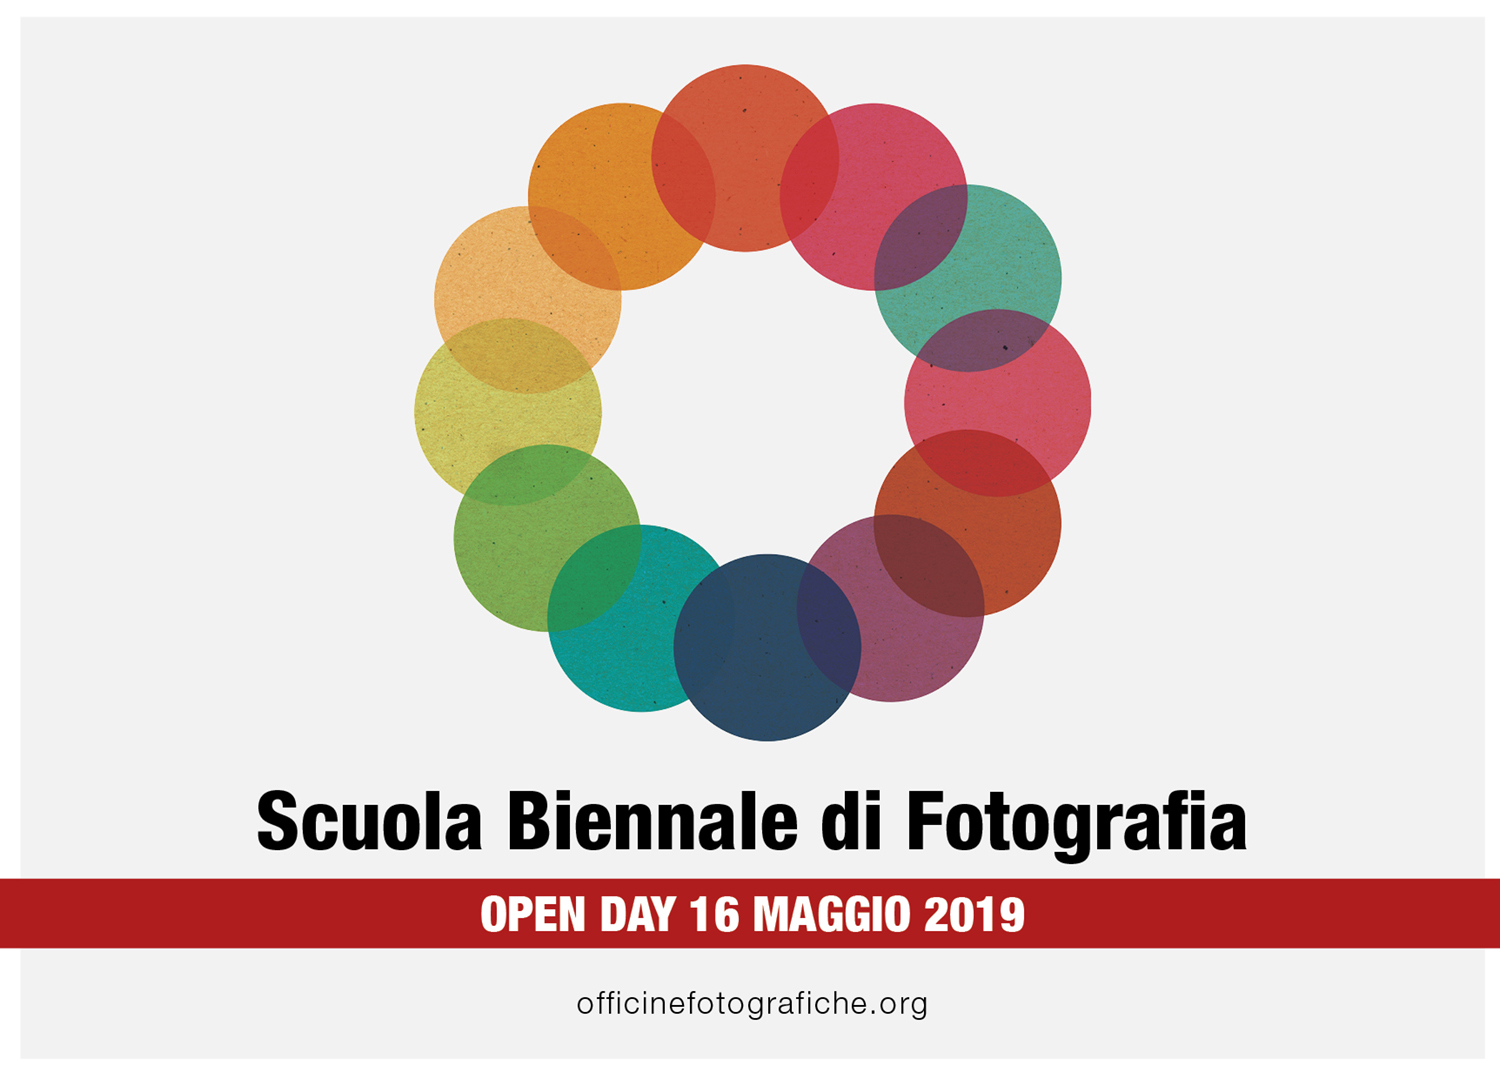 Scuola Biennale di Fotografia - Open Day